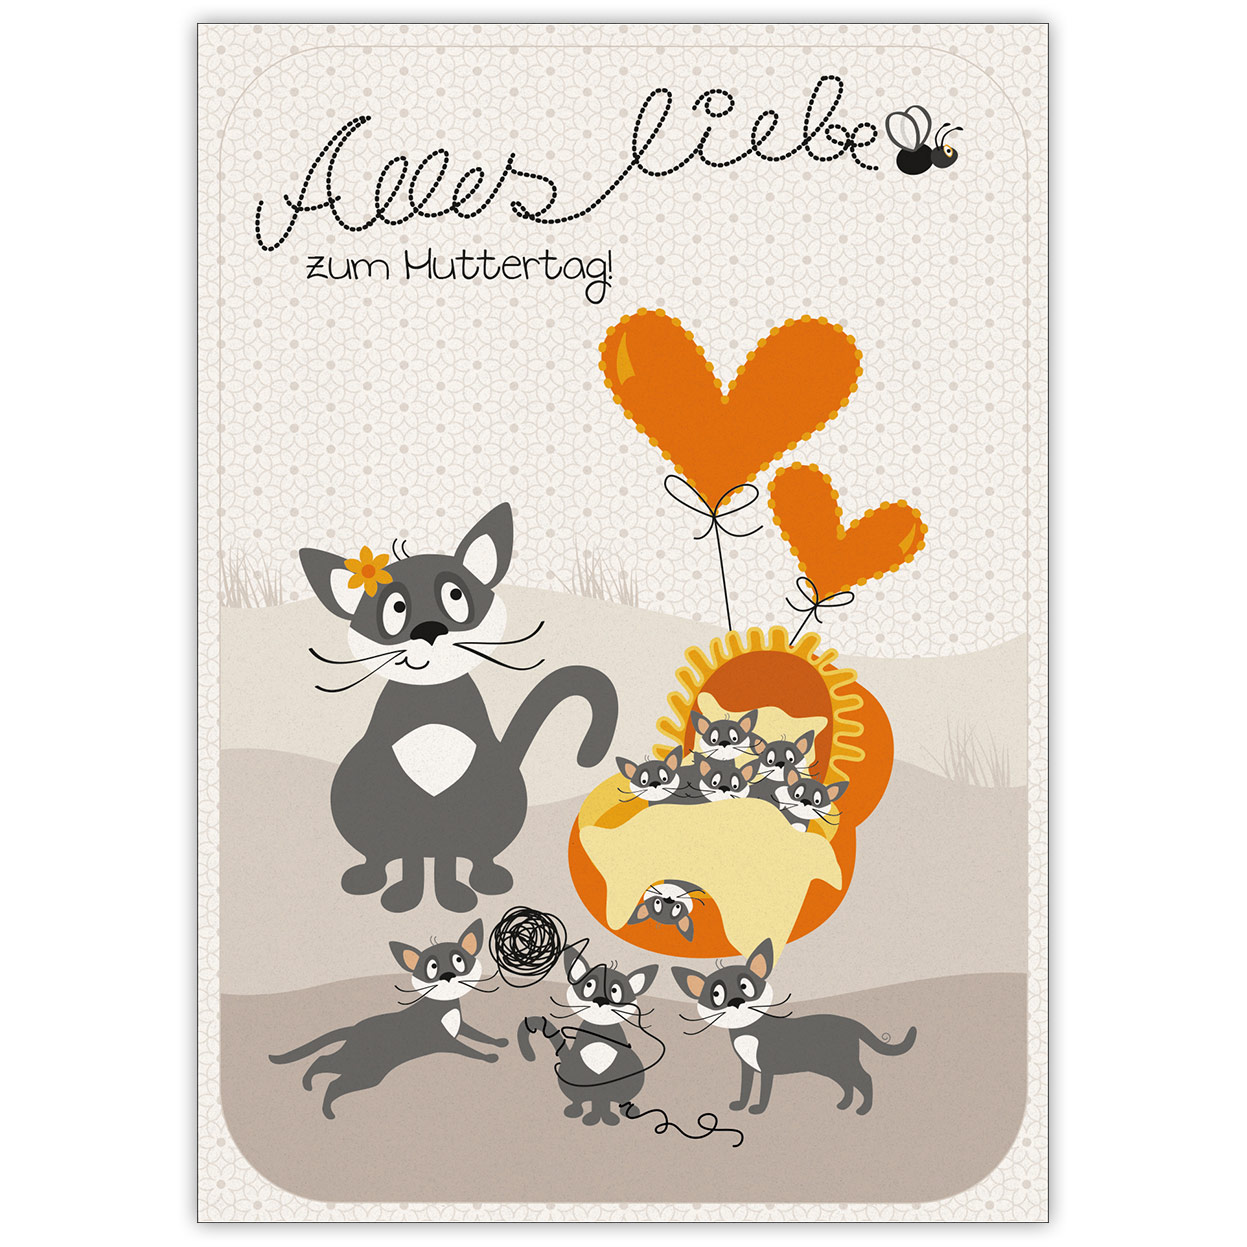 Süße illustrierte Katzen gratulieren: Alles liebe zum Muttertag!